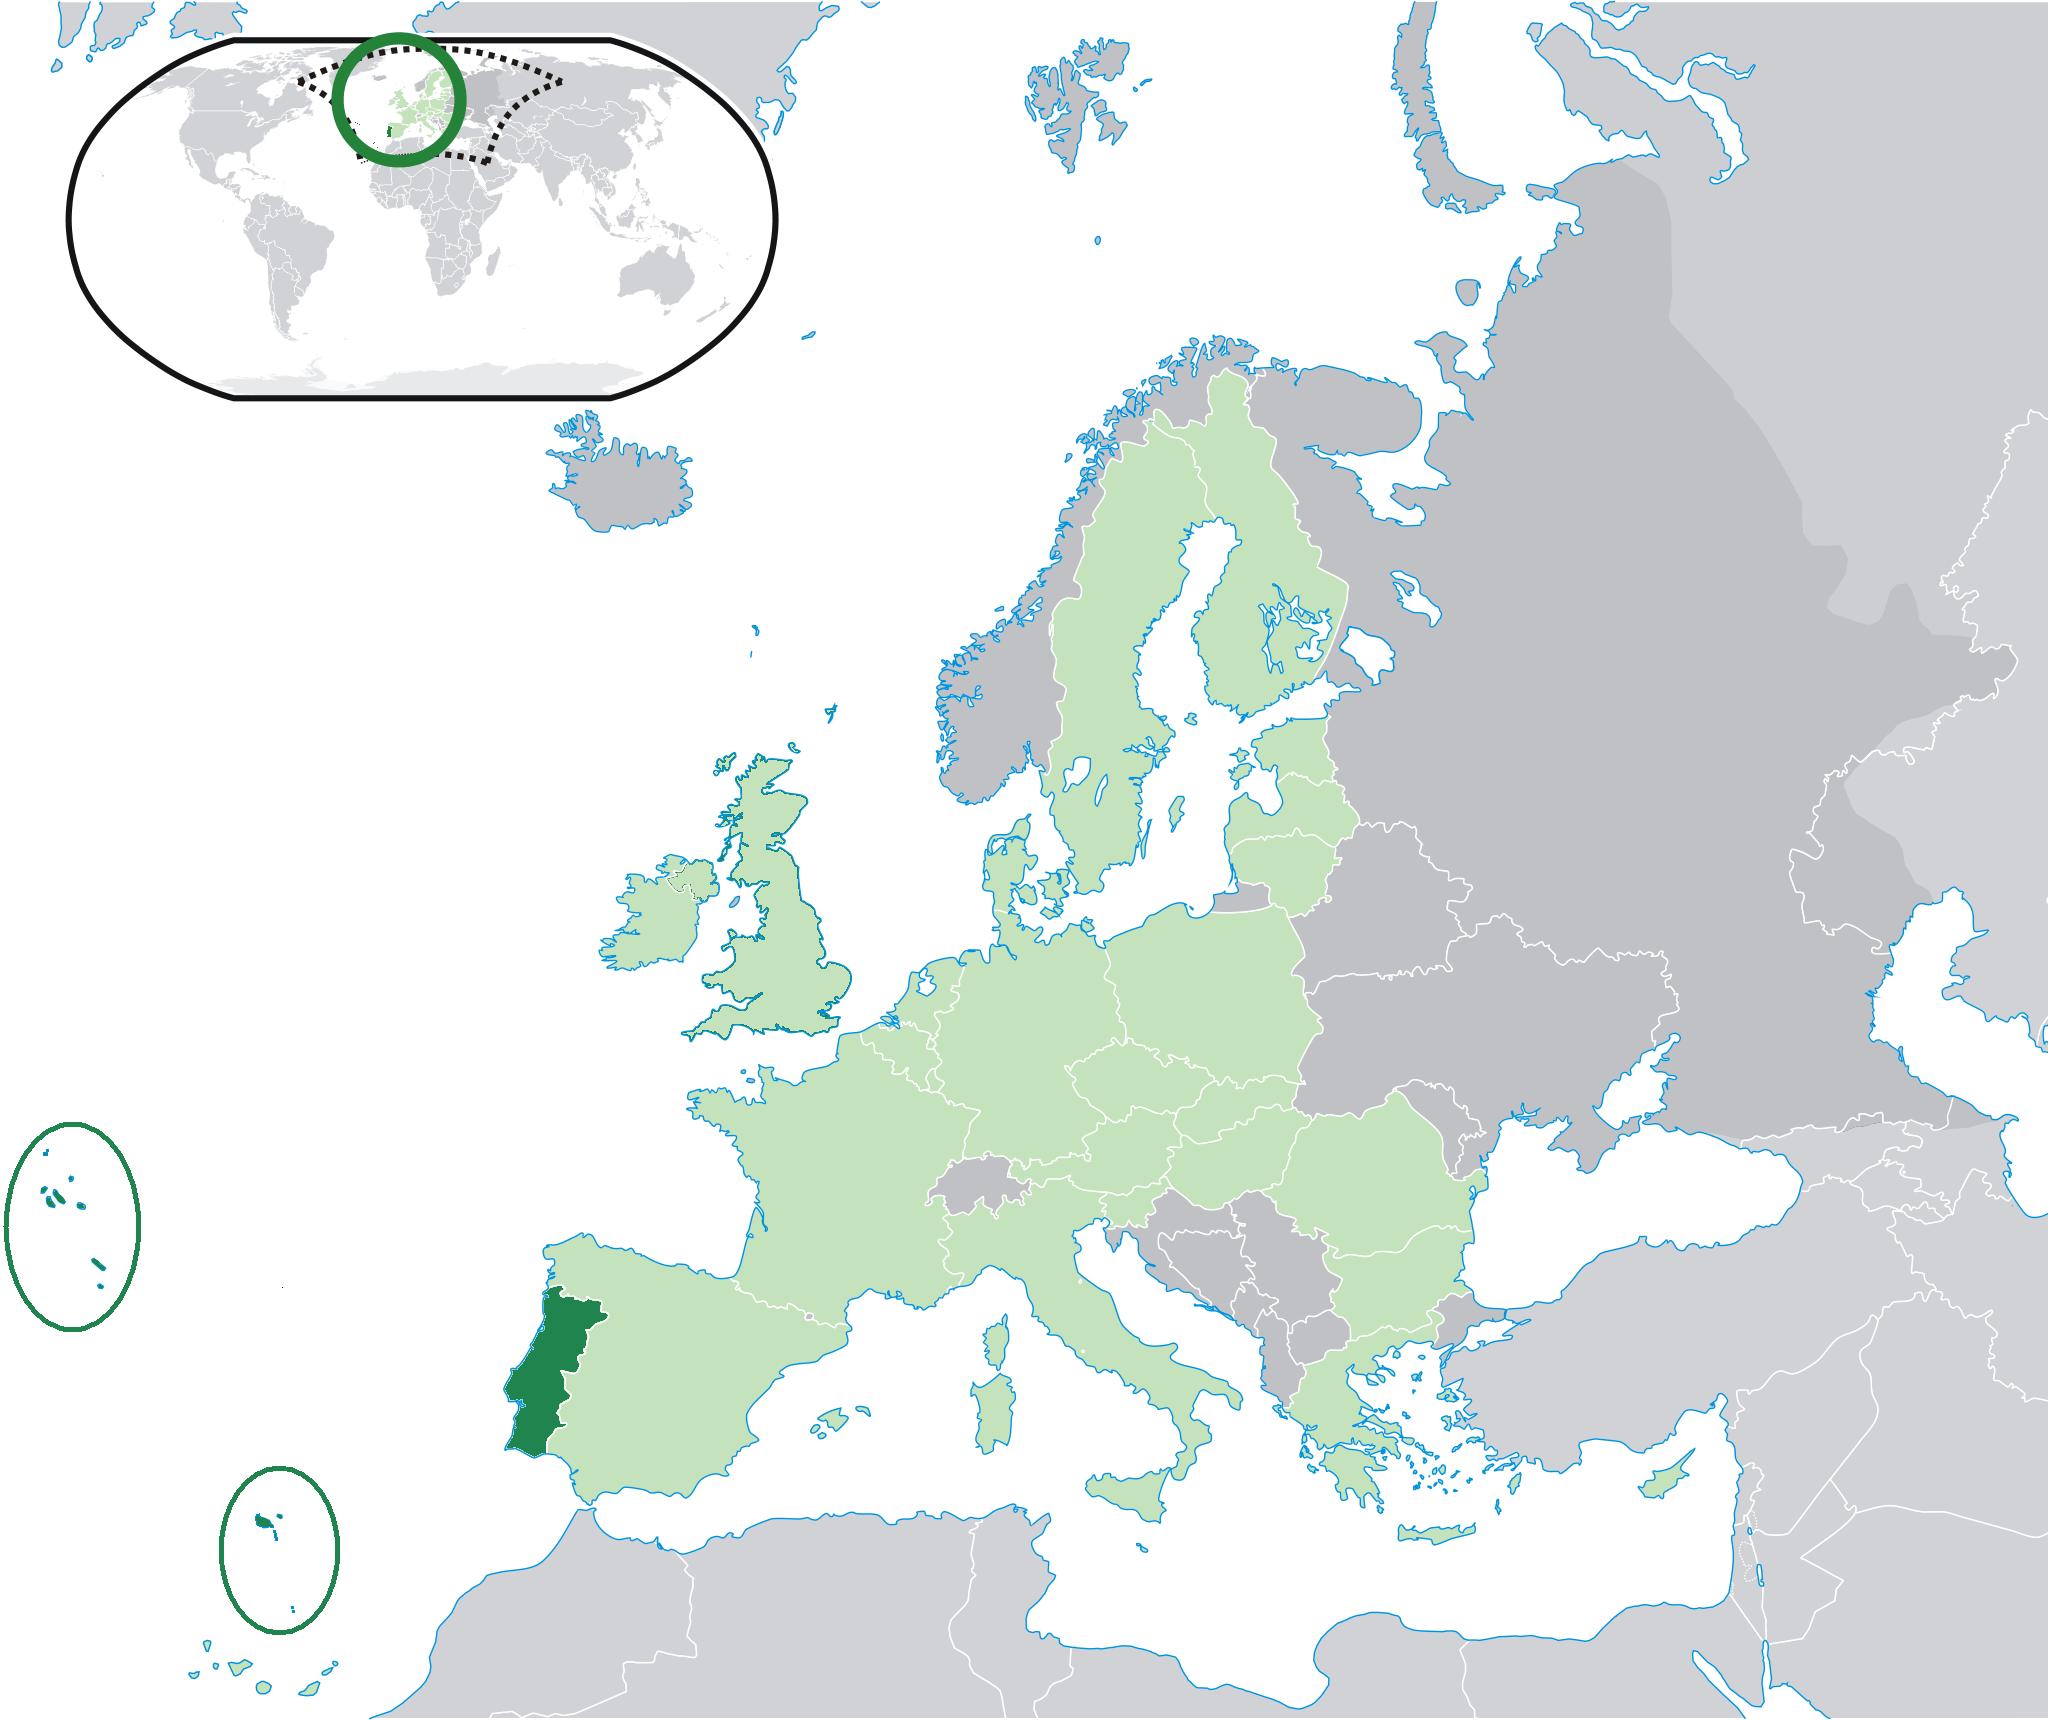 Portugal no mapa do mundo: países vizinhos e localização no mapa da Europa